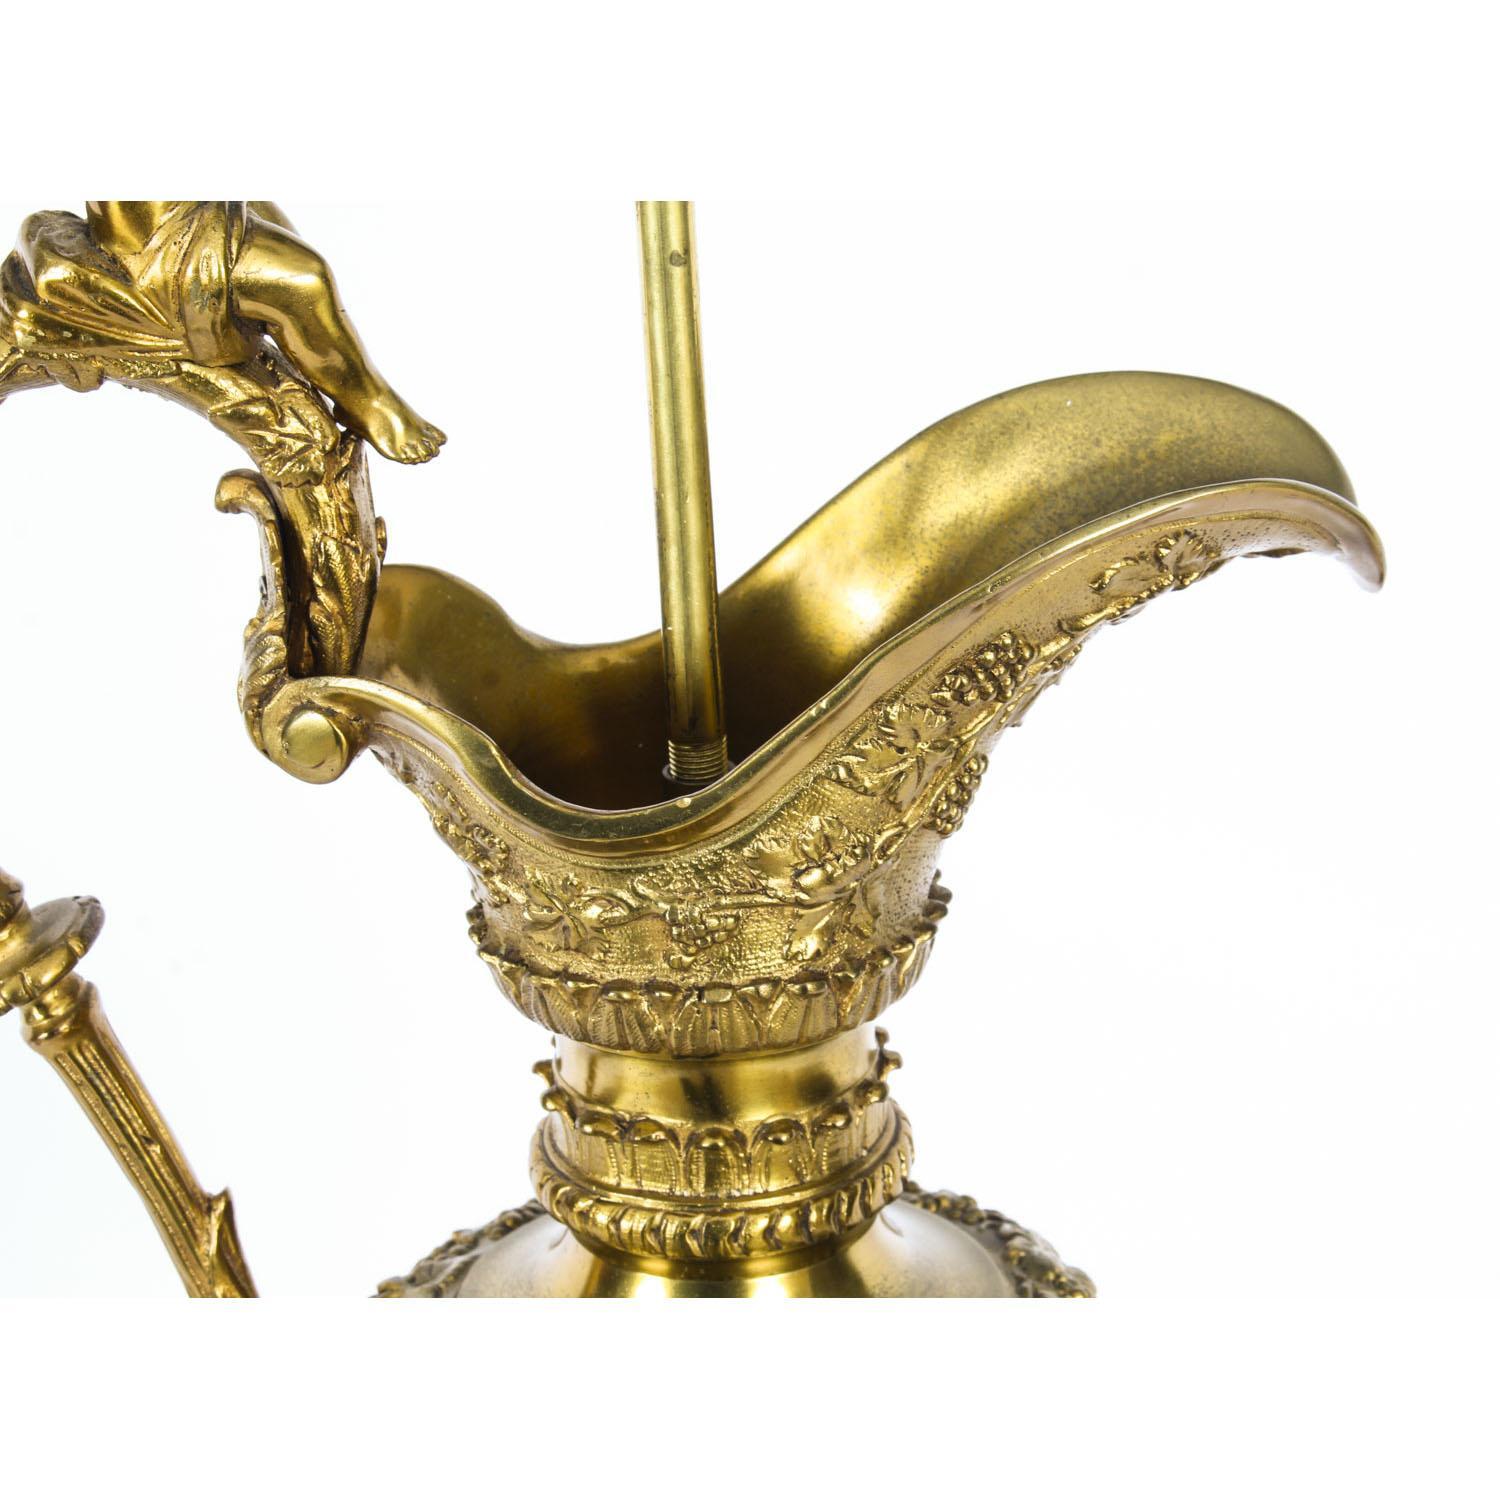 Antique Gilt Bronze Renaissance Revival Table Lamp, 19th Century For Sale 6